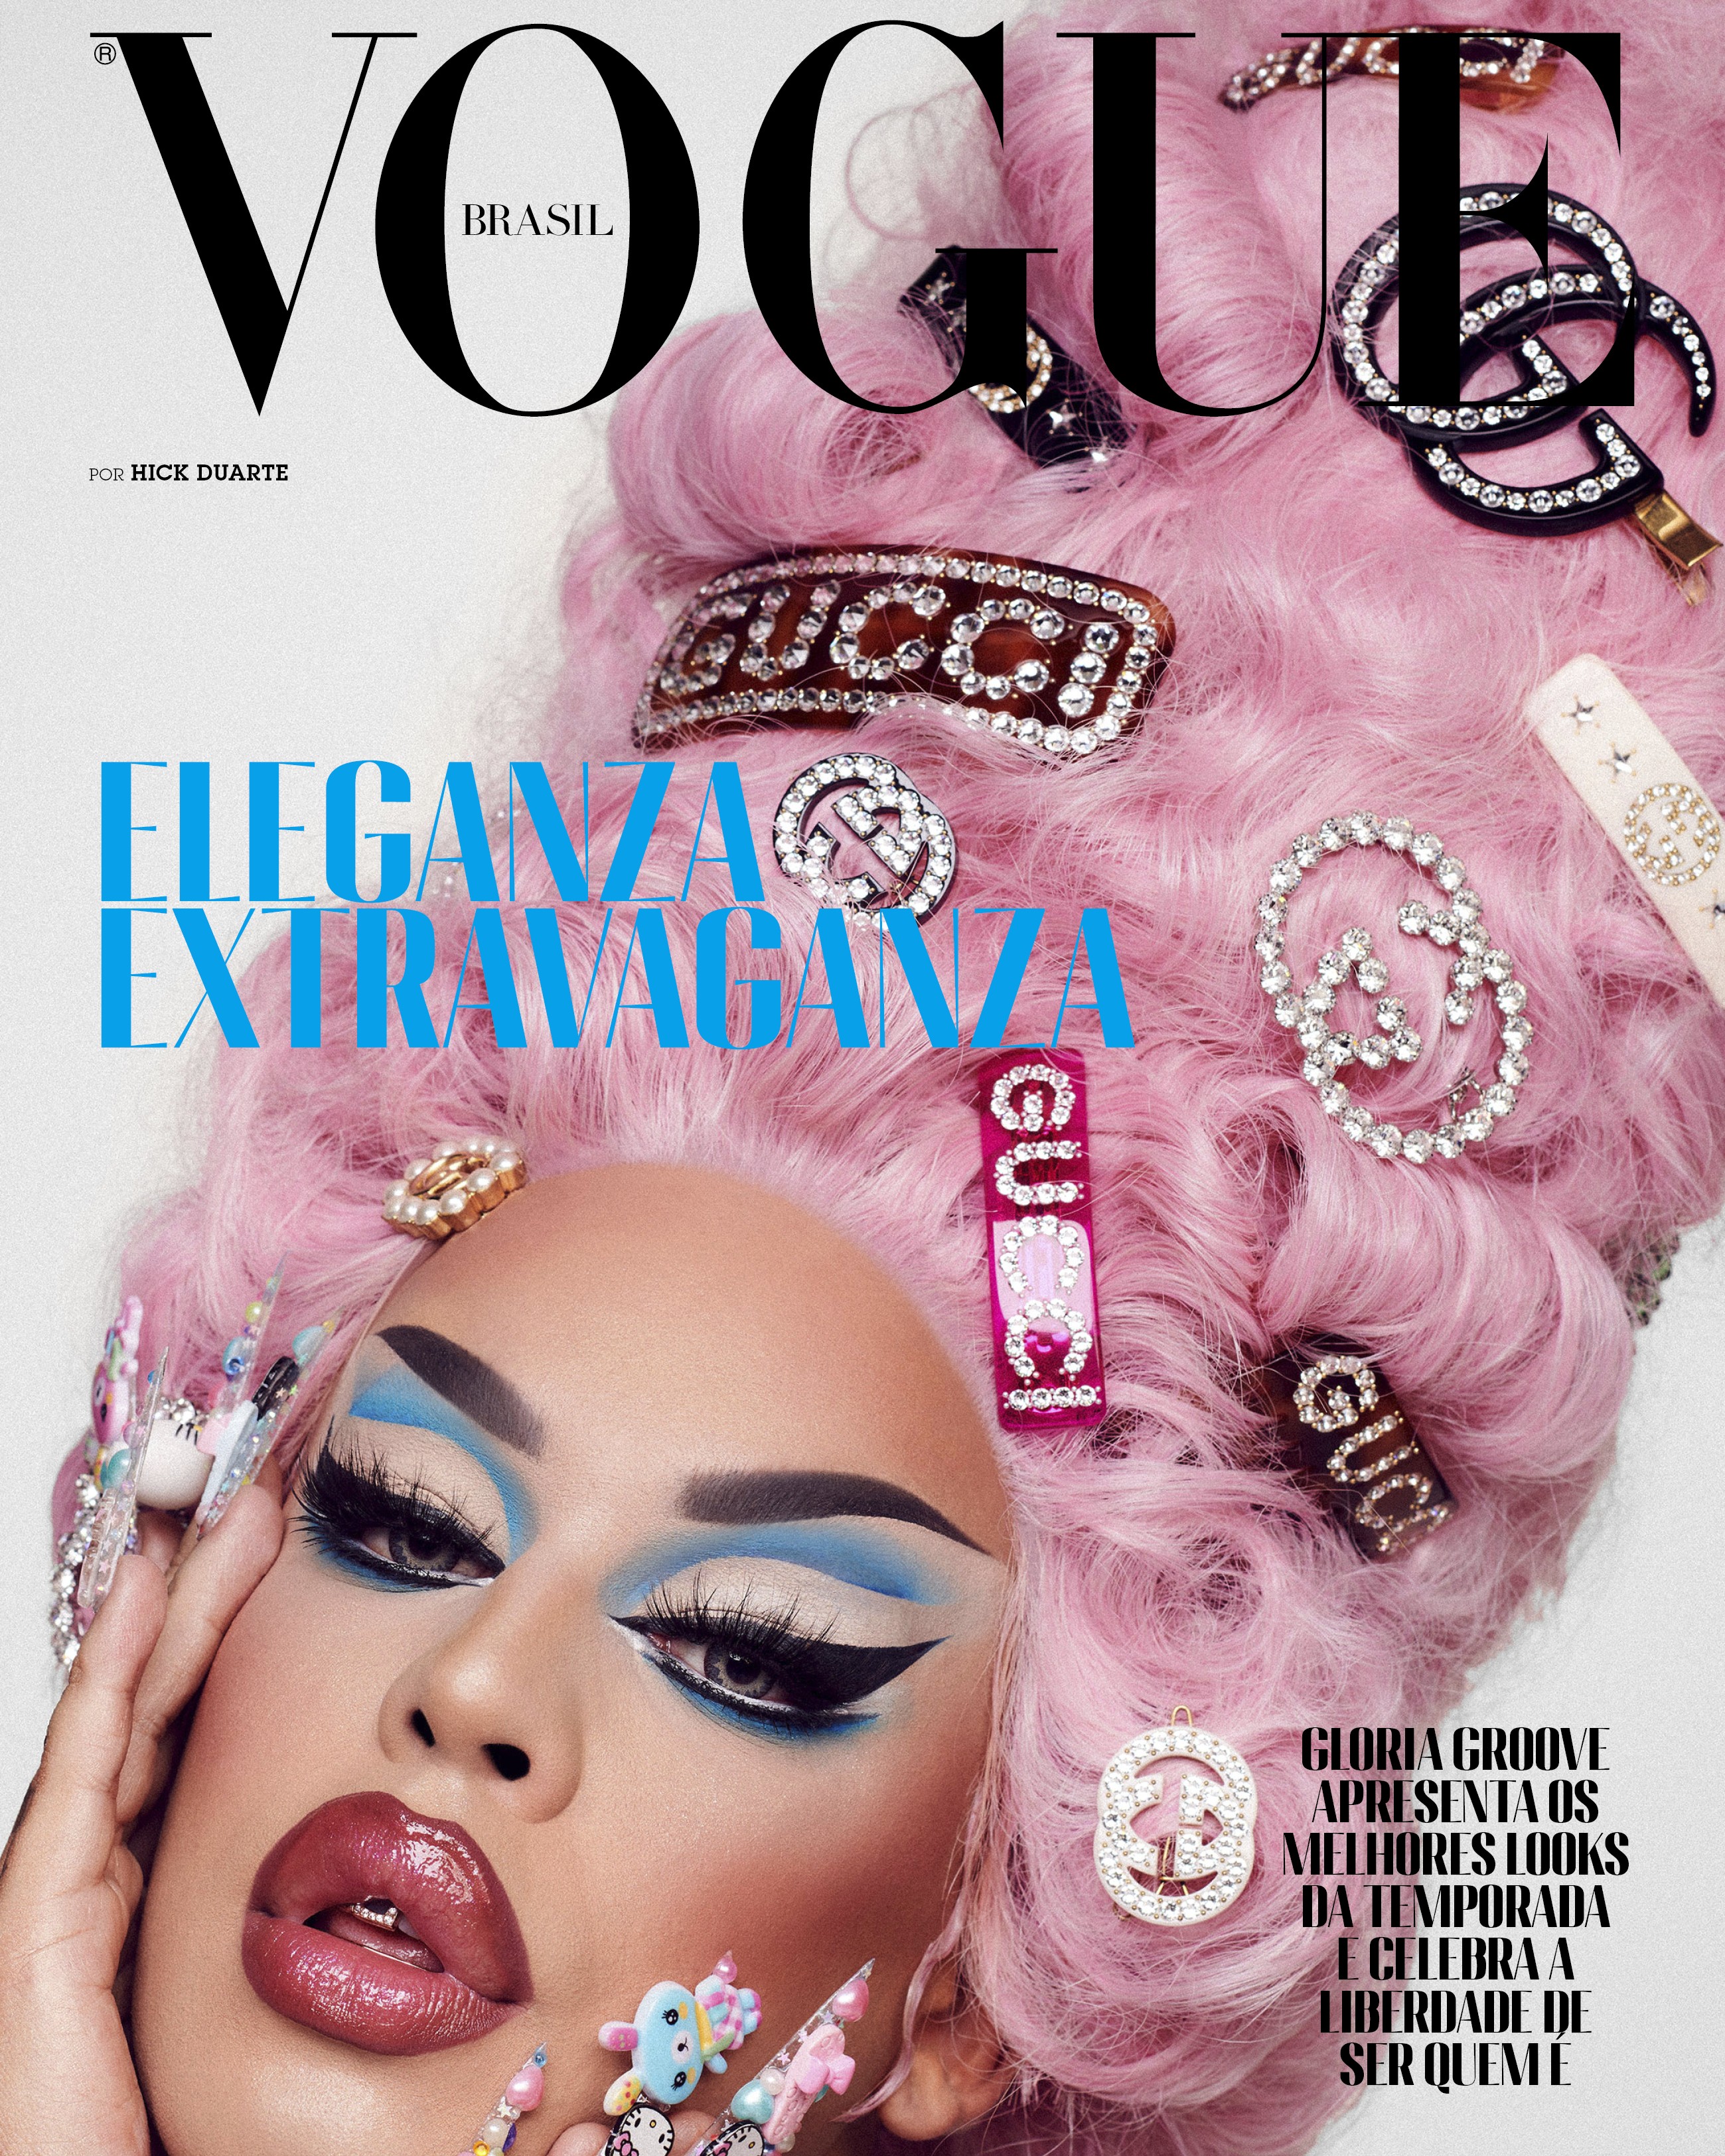 Gloria Groove para Vogue de outubro (Foto: Vogue Brasil/ Hick Duarte)